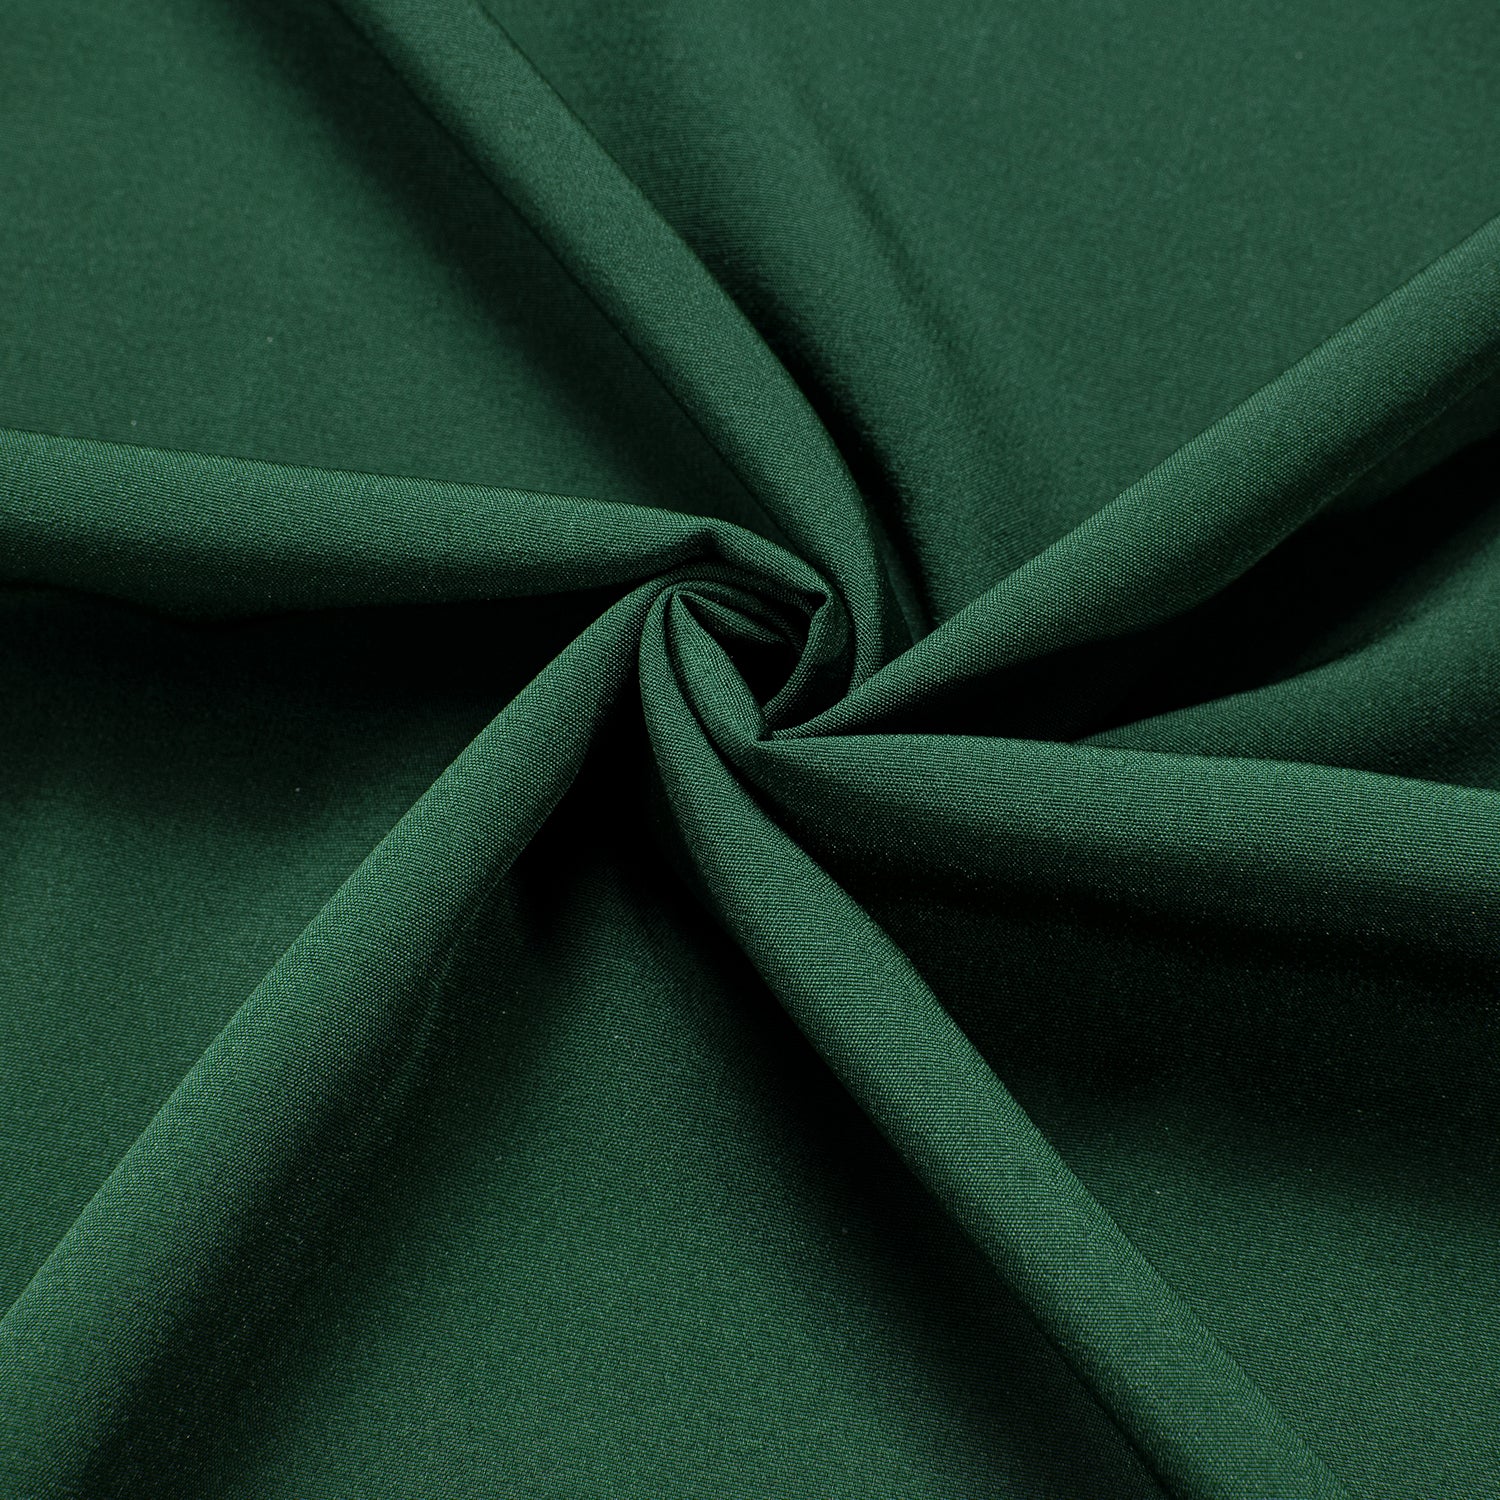 Emerald Green Solid Men's Long Sleeve Dress Shirt